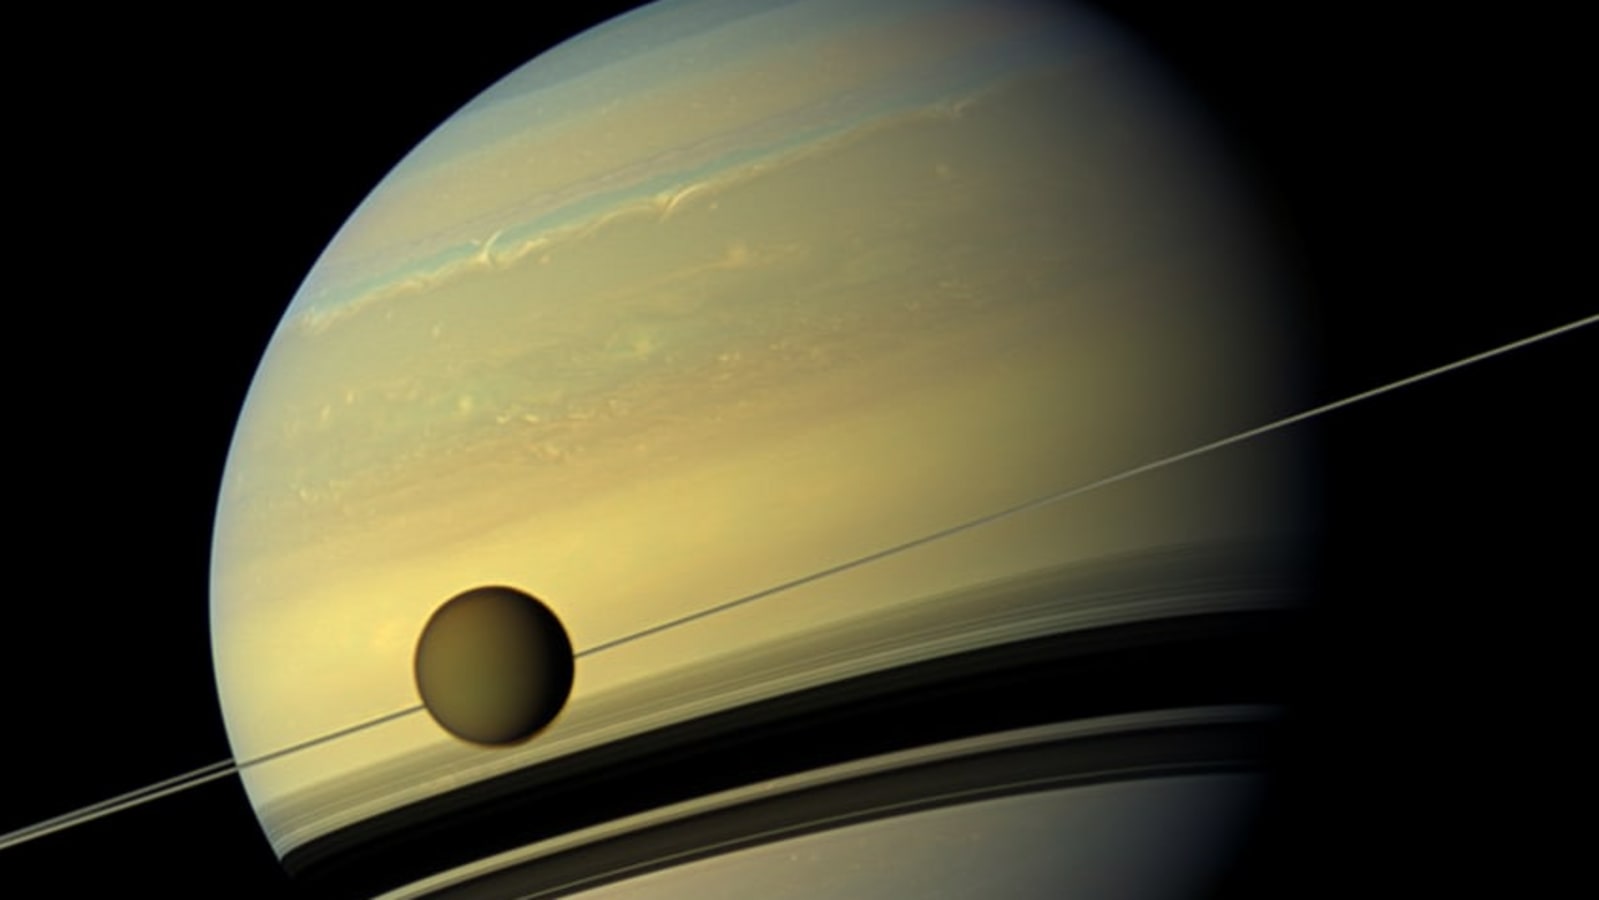 6 Saturn secrets revealed | Iowa Now - The University of Iowa